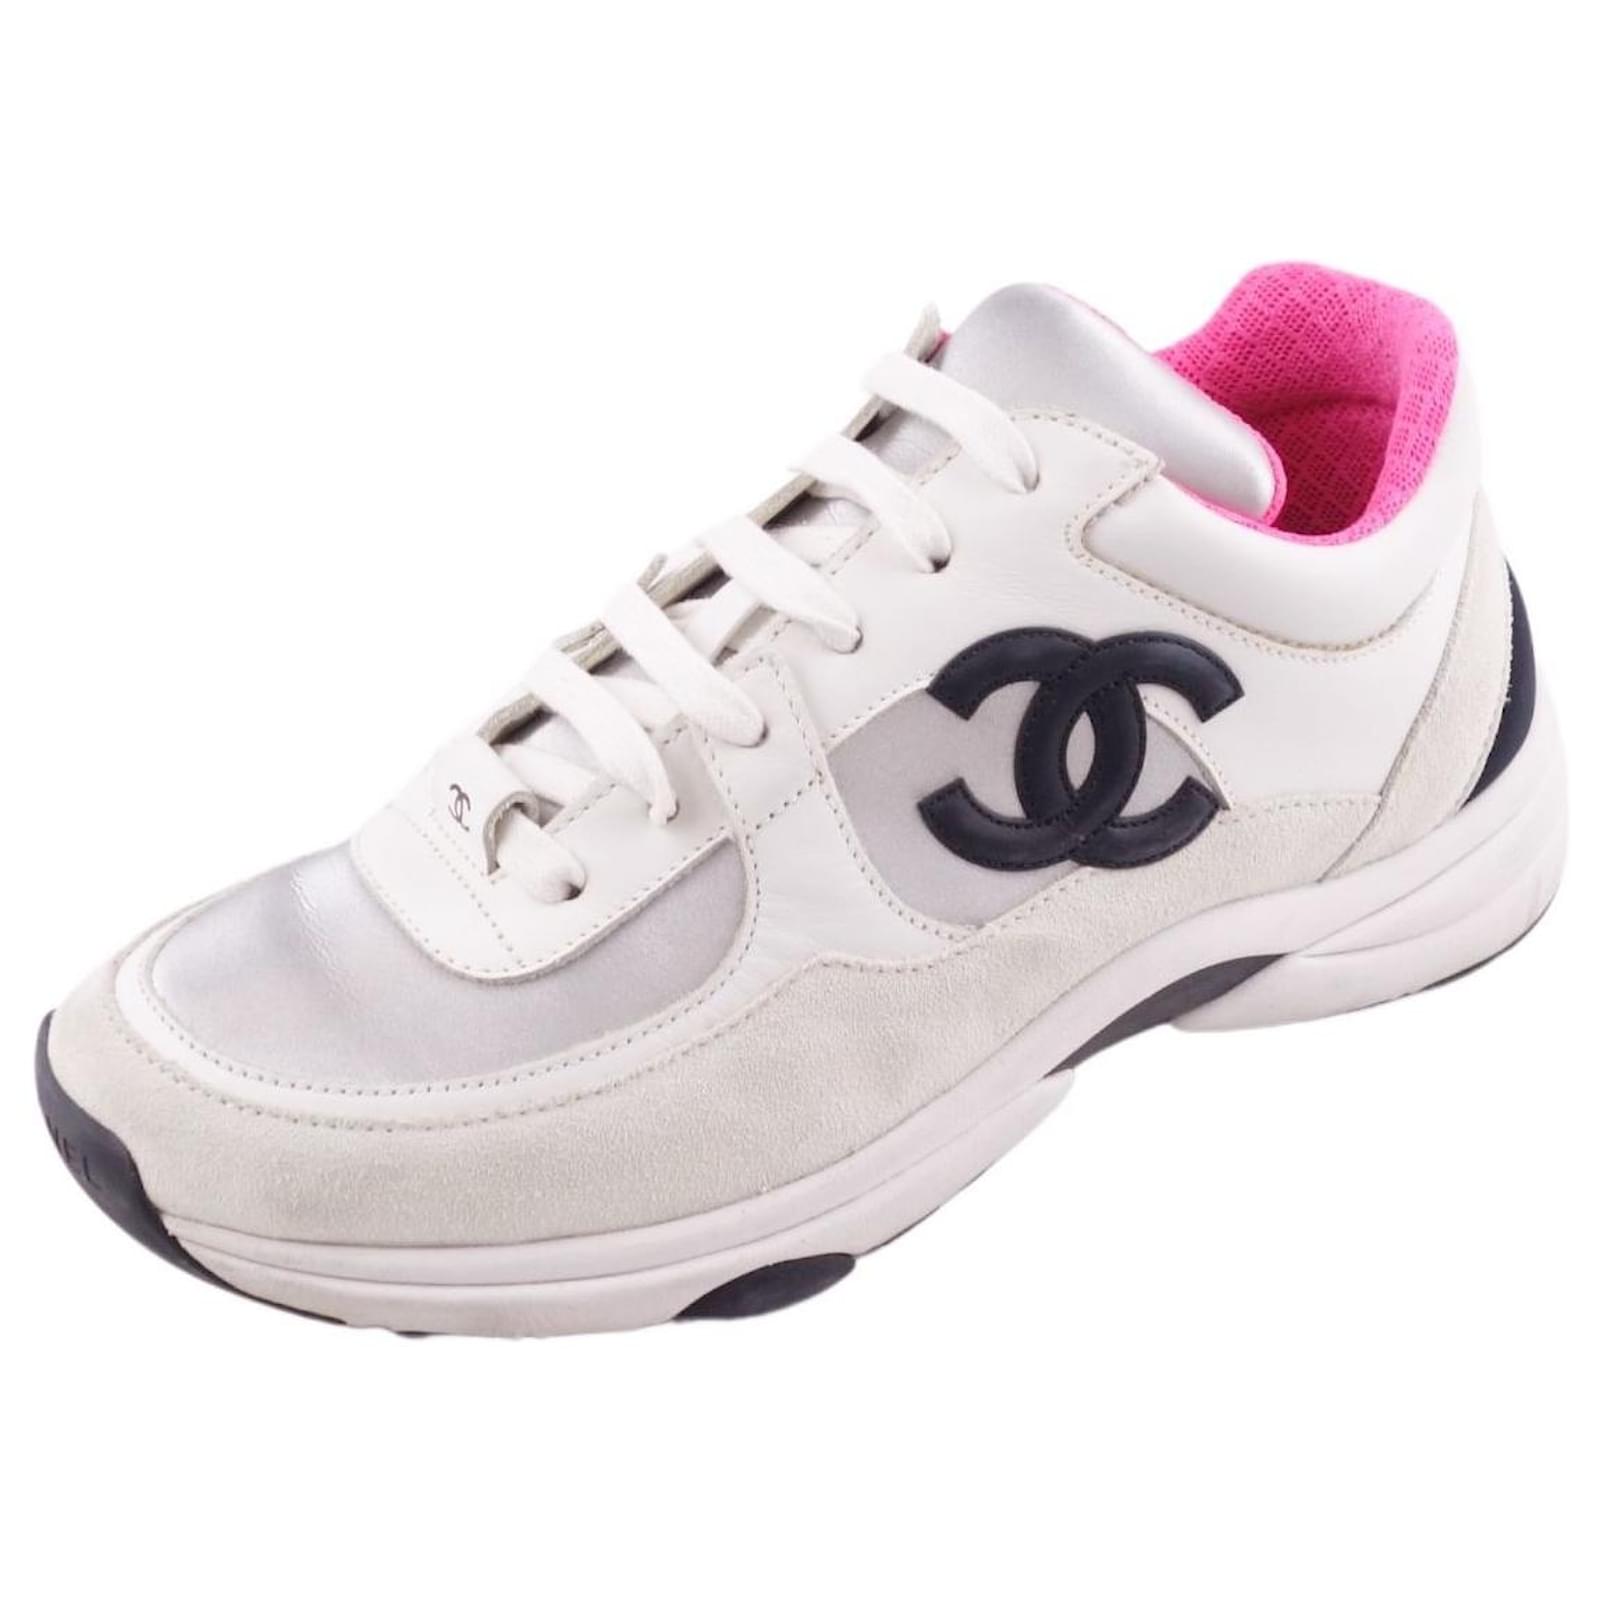 Chanel zapatillas 18Zapatos De Mujer Con Cordones De Cuero De Gamuza P Coco Mark Blanco / Rosa Tamaño Suecia - Joli Closet